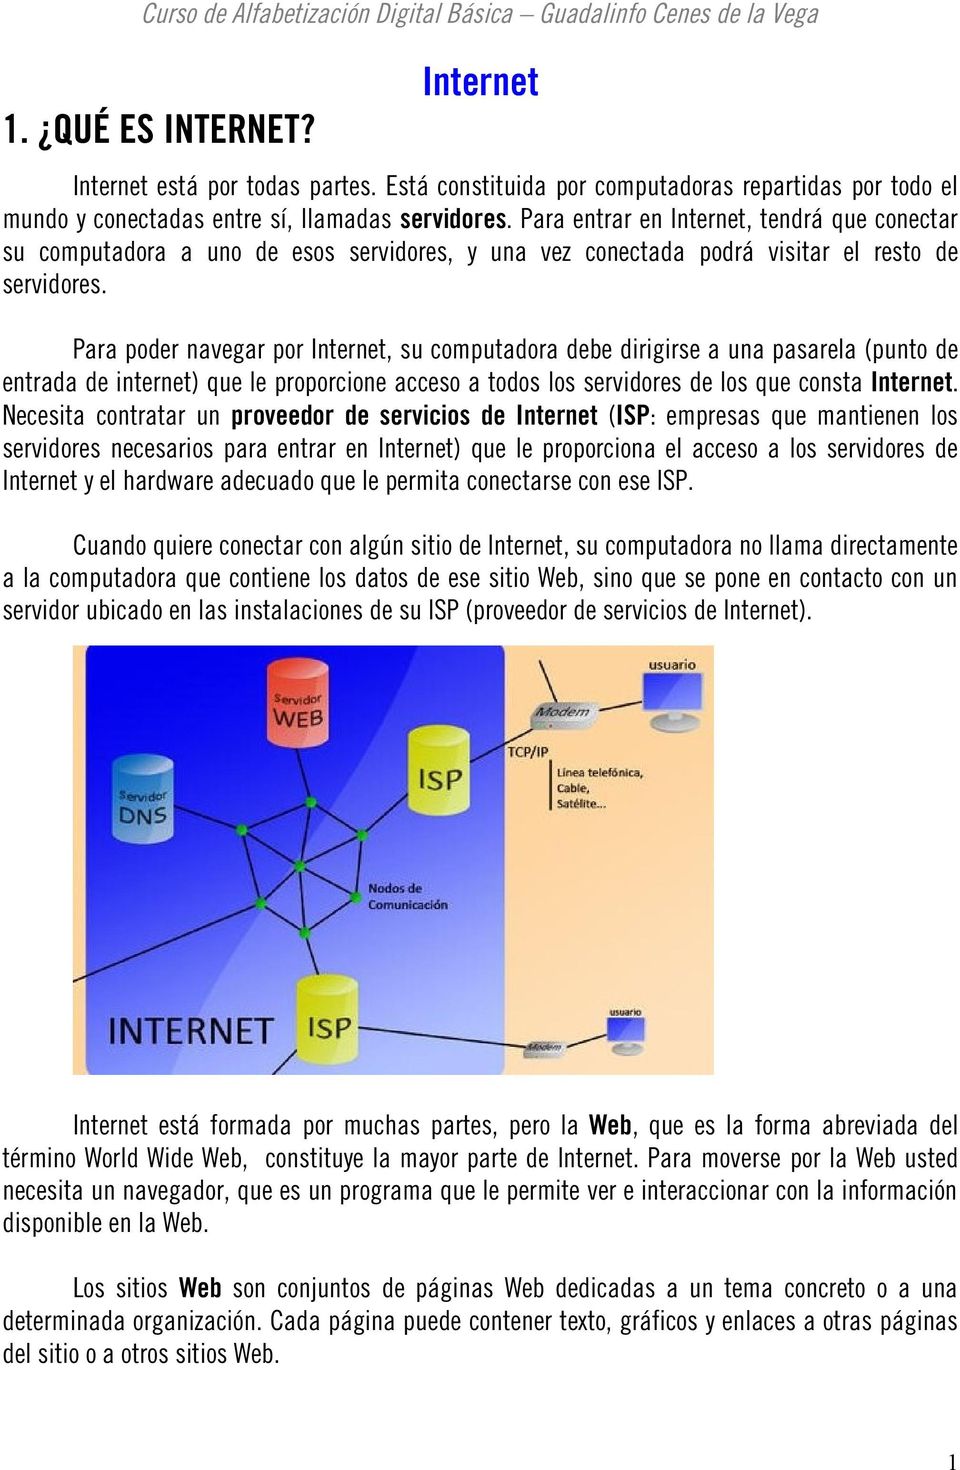 Para poder navegar por Internet, su computadora debe dirigirse a una pasarela (punto de entrada de internet) que le proporcione acceso a todos los servidores de los que consta Internet.